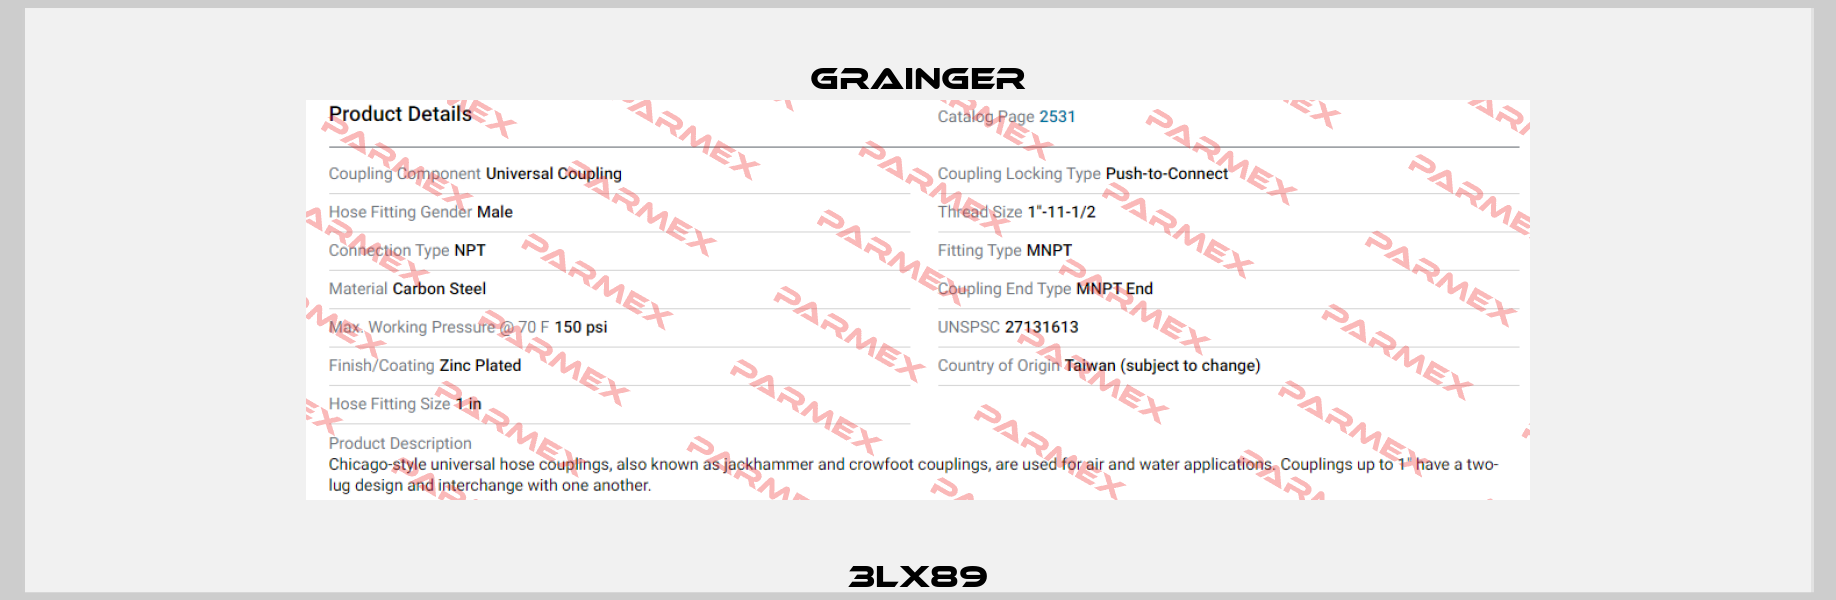 3LX89 Grainger